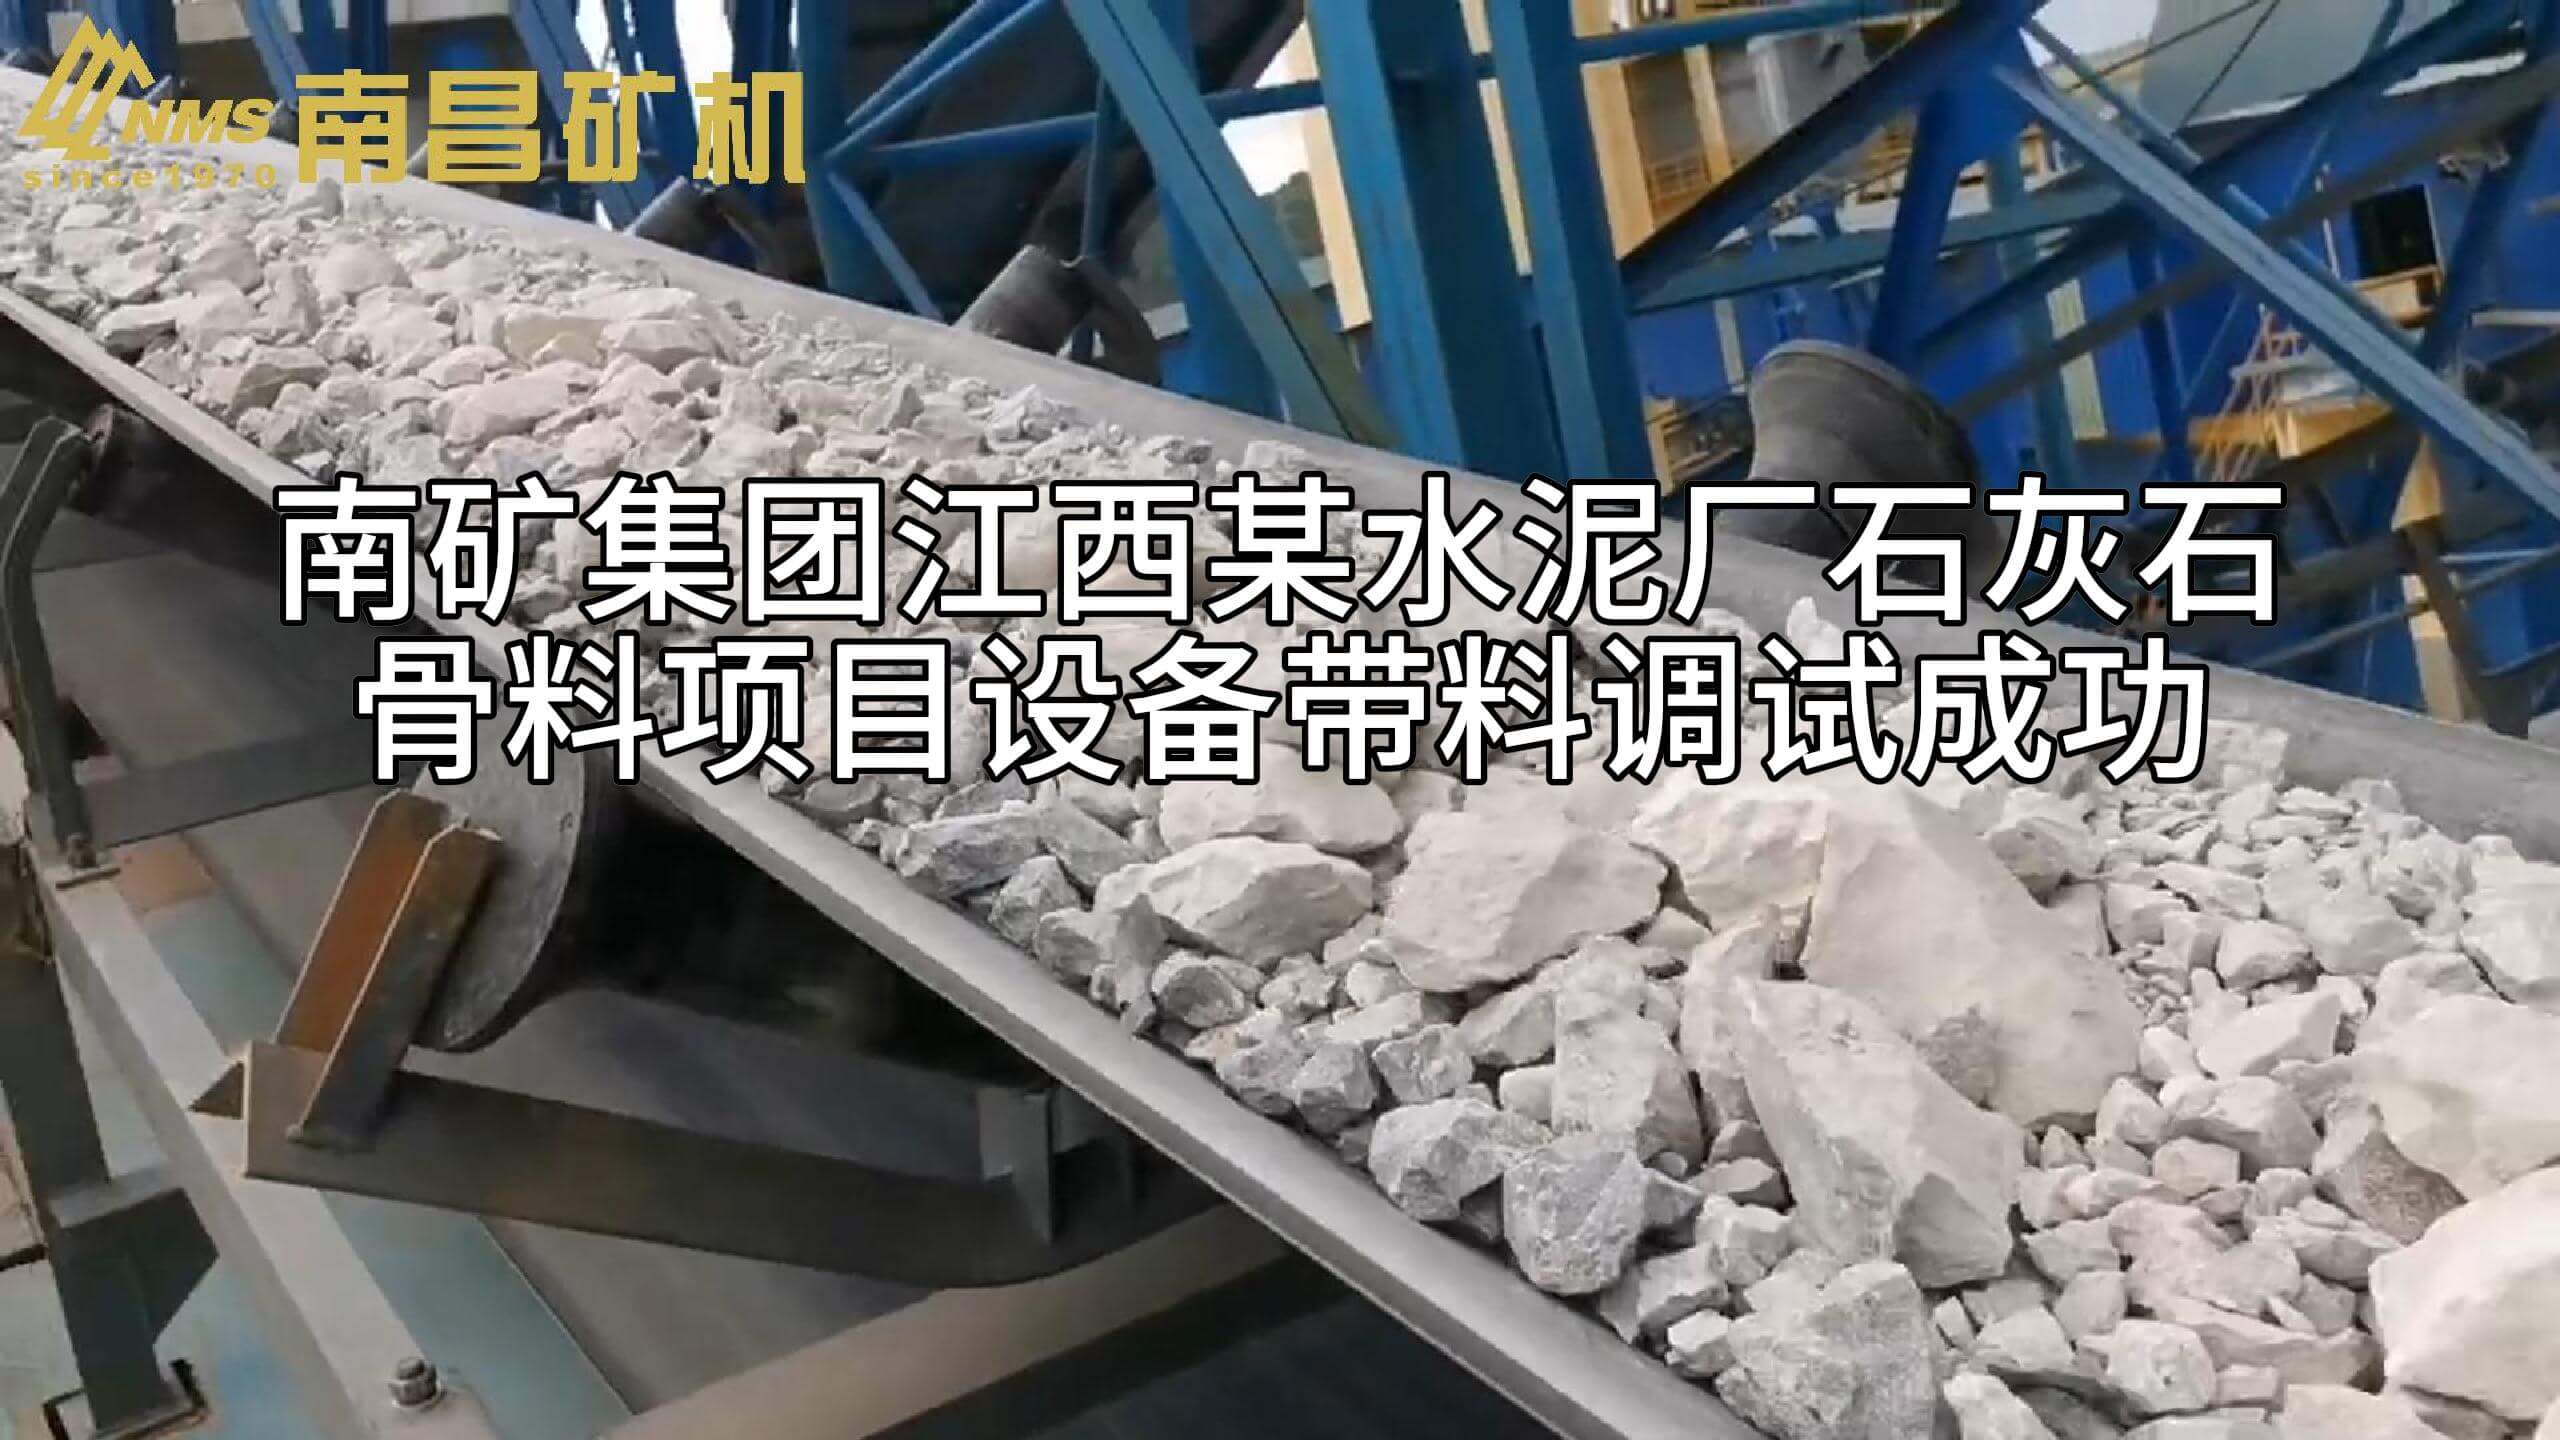 南矿集团江西某水泥厂石灰石骨料项目设备带料调试成功